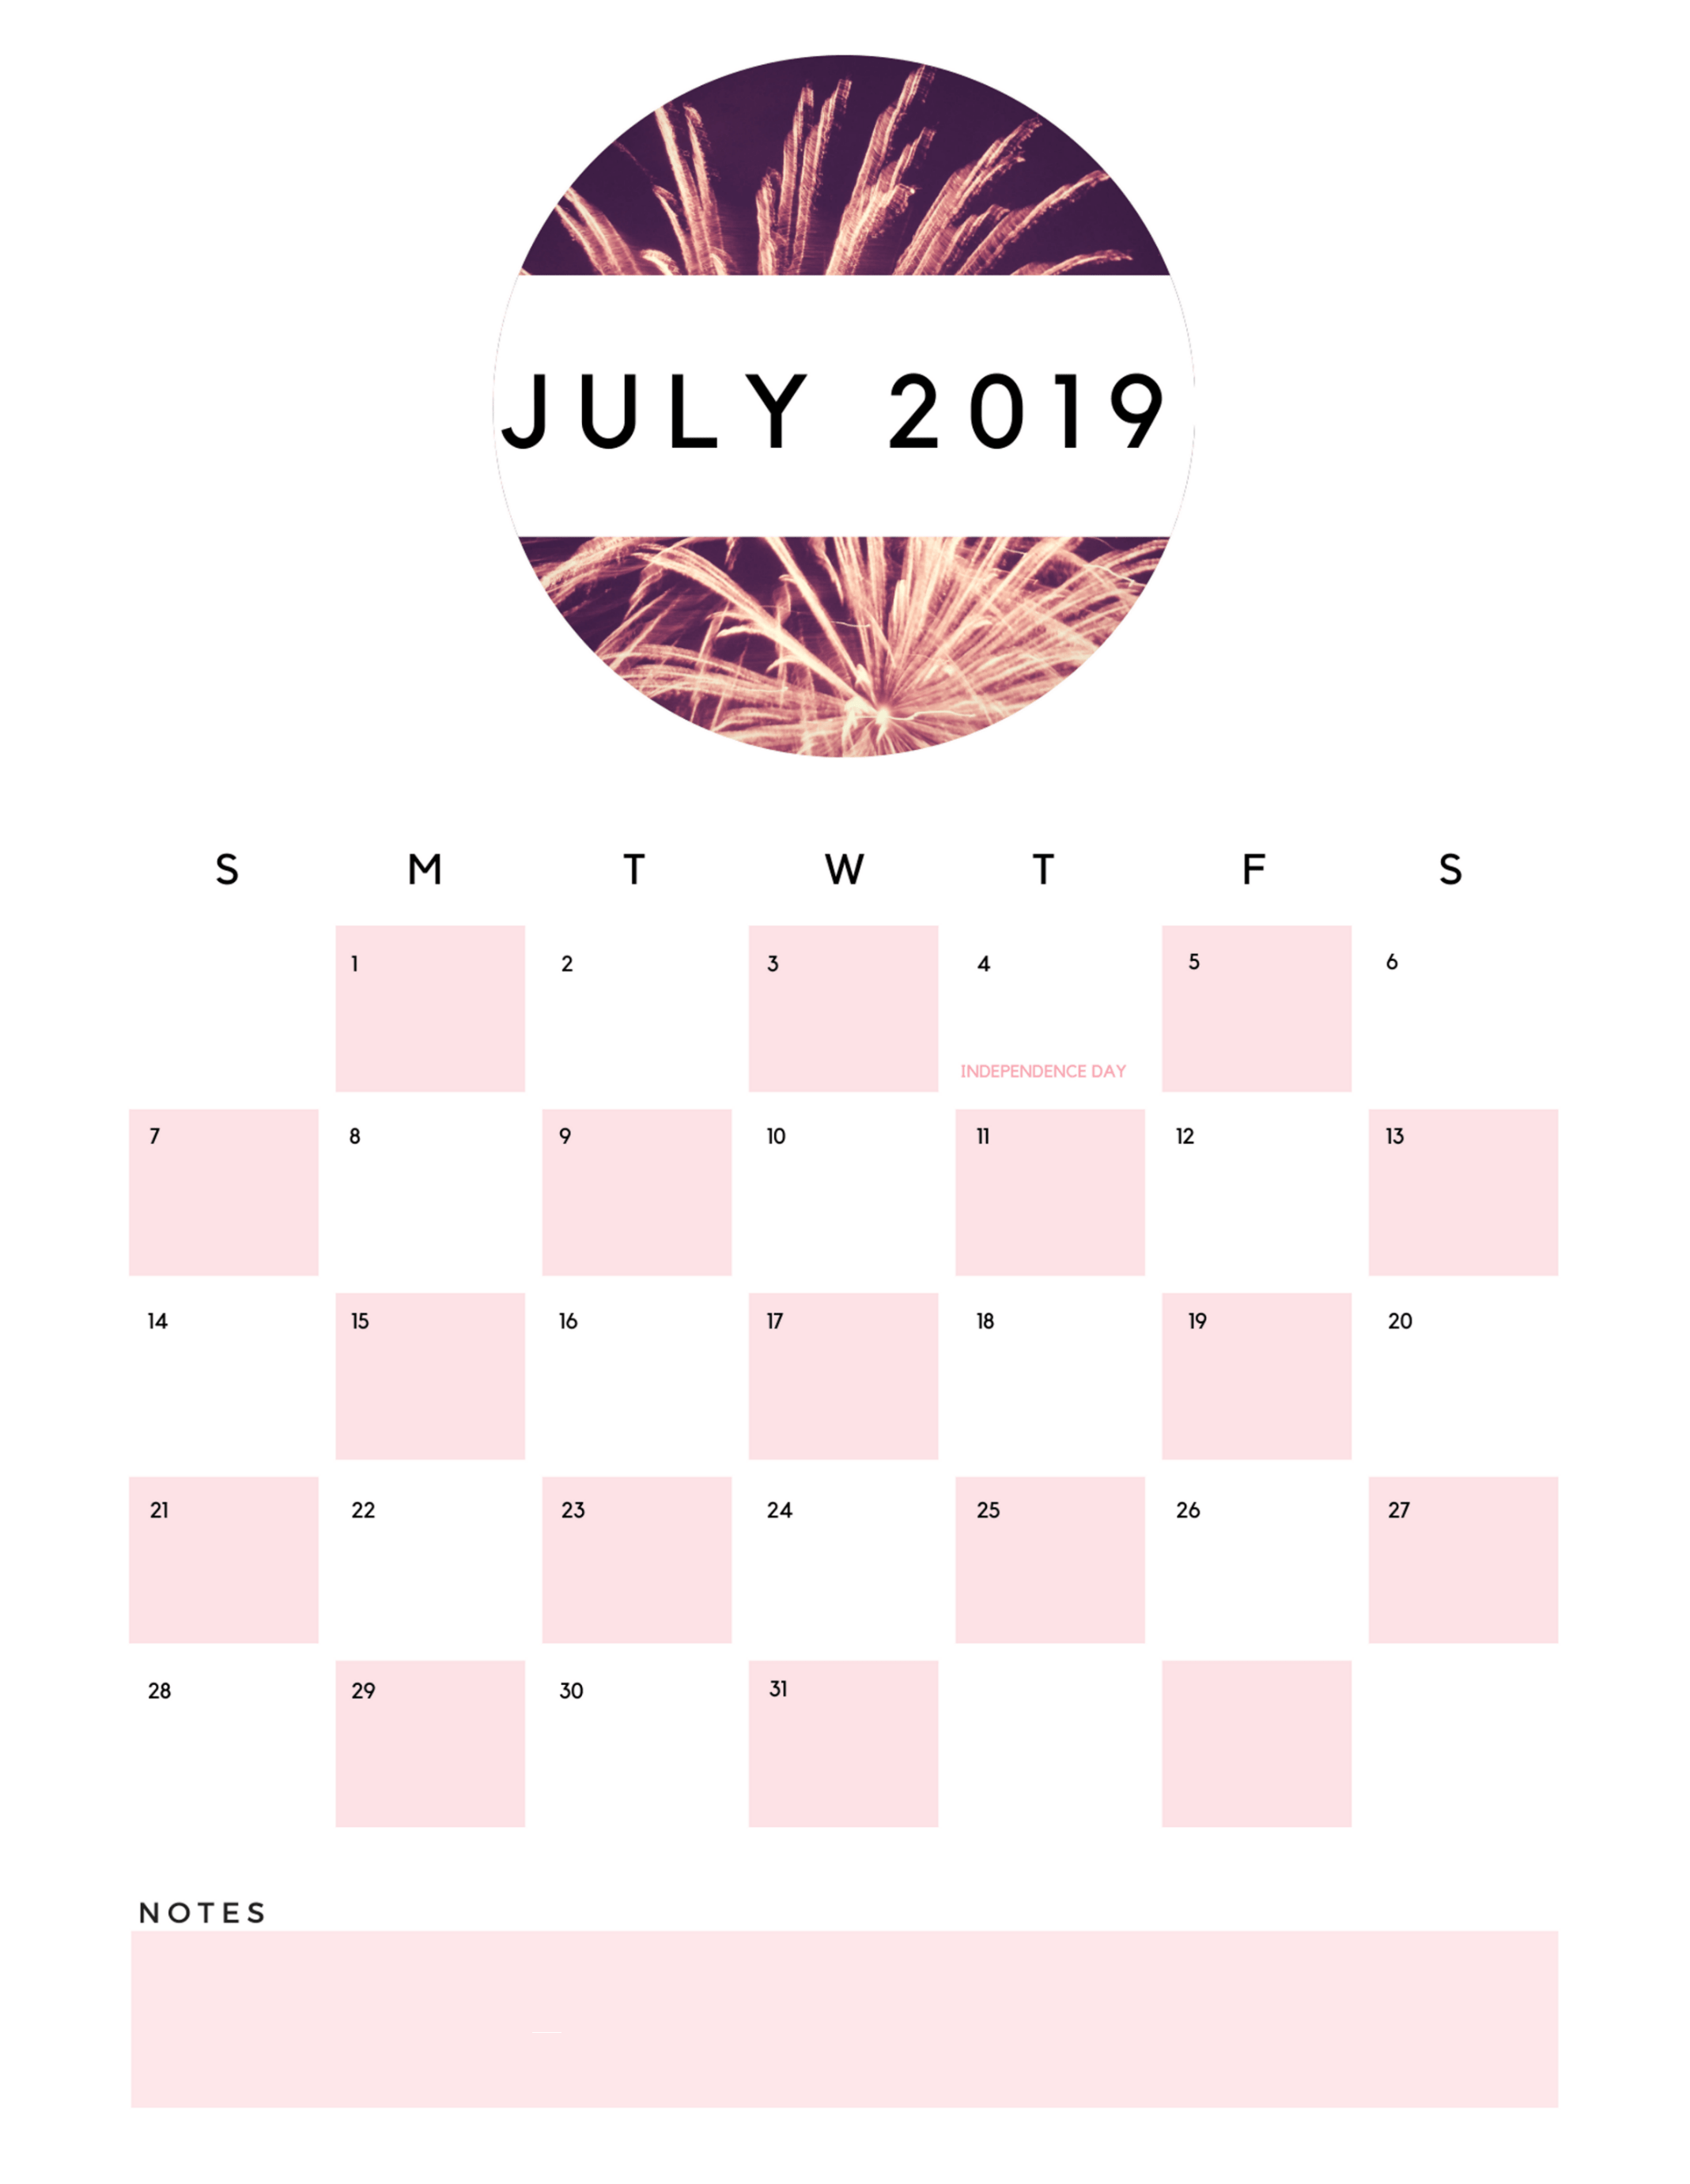 July 2019 Wall Calendar. calendar 2019 calendar, Calendar